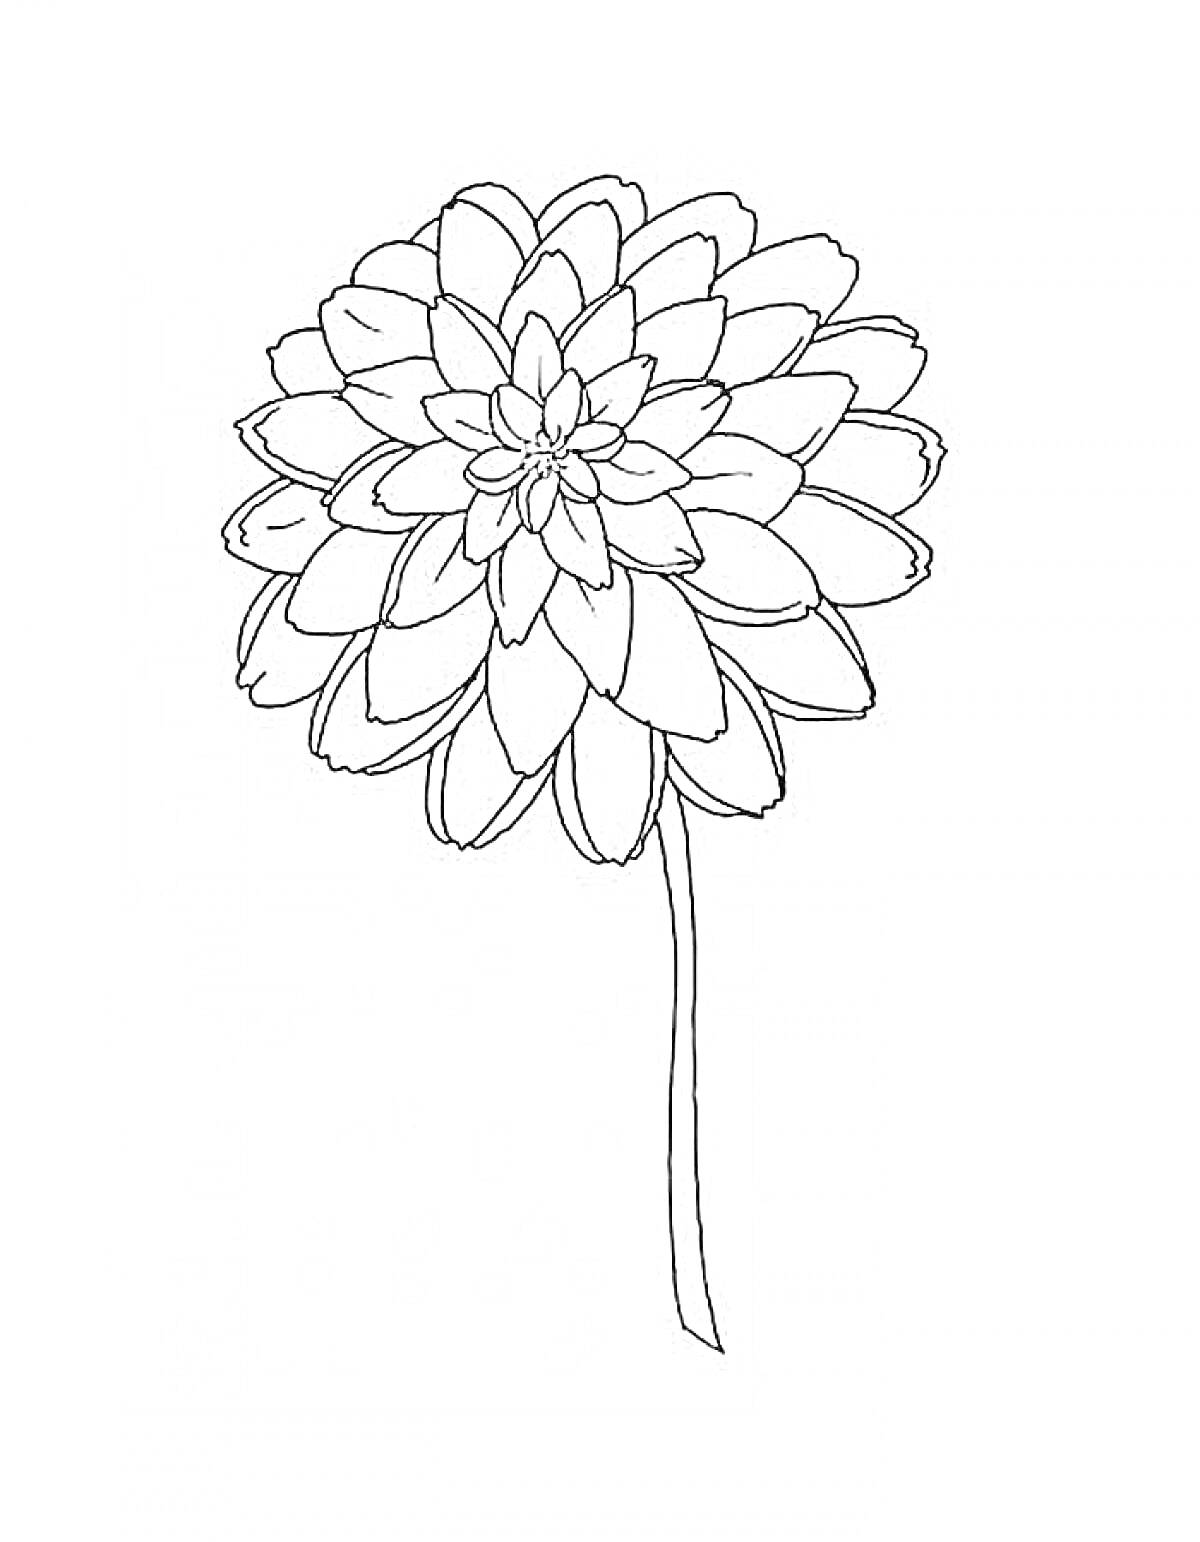 Раскраска Цветок с крупными лепестками на длинном стебле